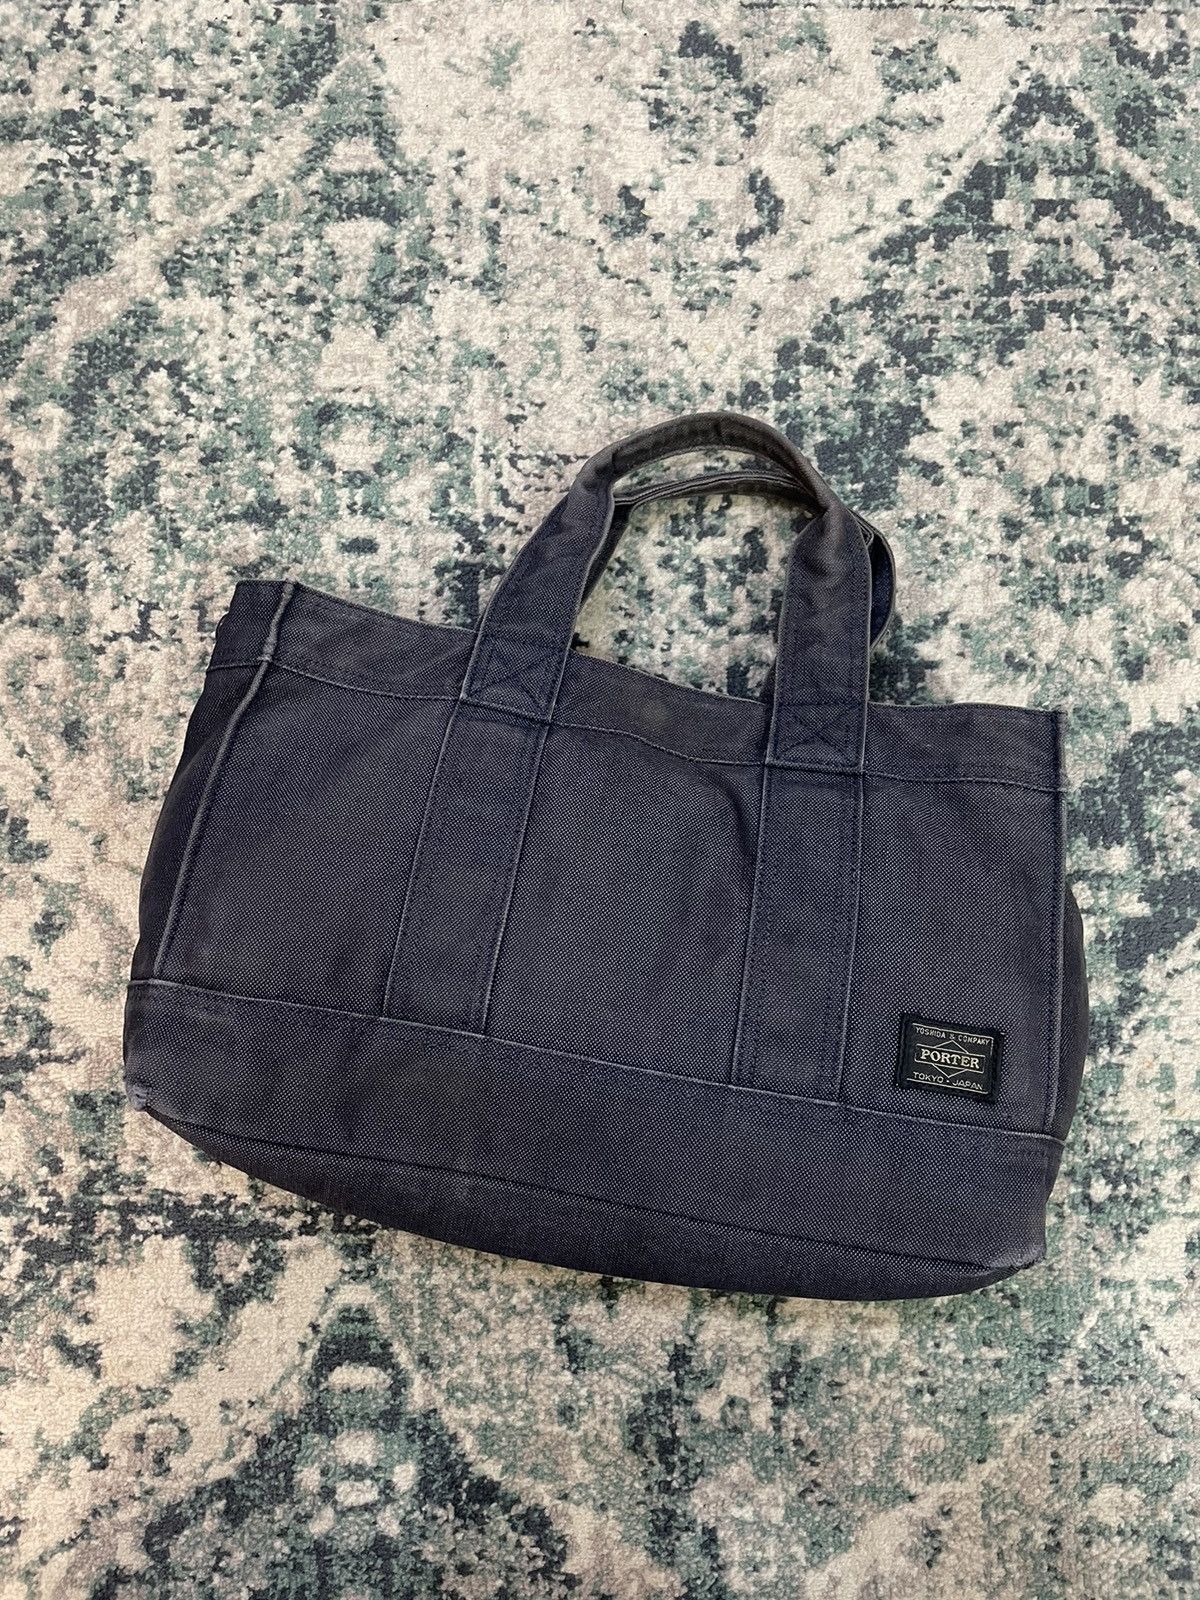 Porter Made In Japan Black Denim Tote Bag Denim Material - 13